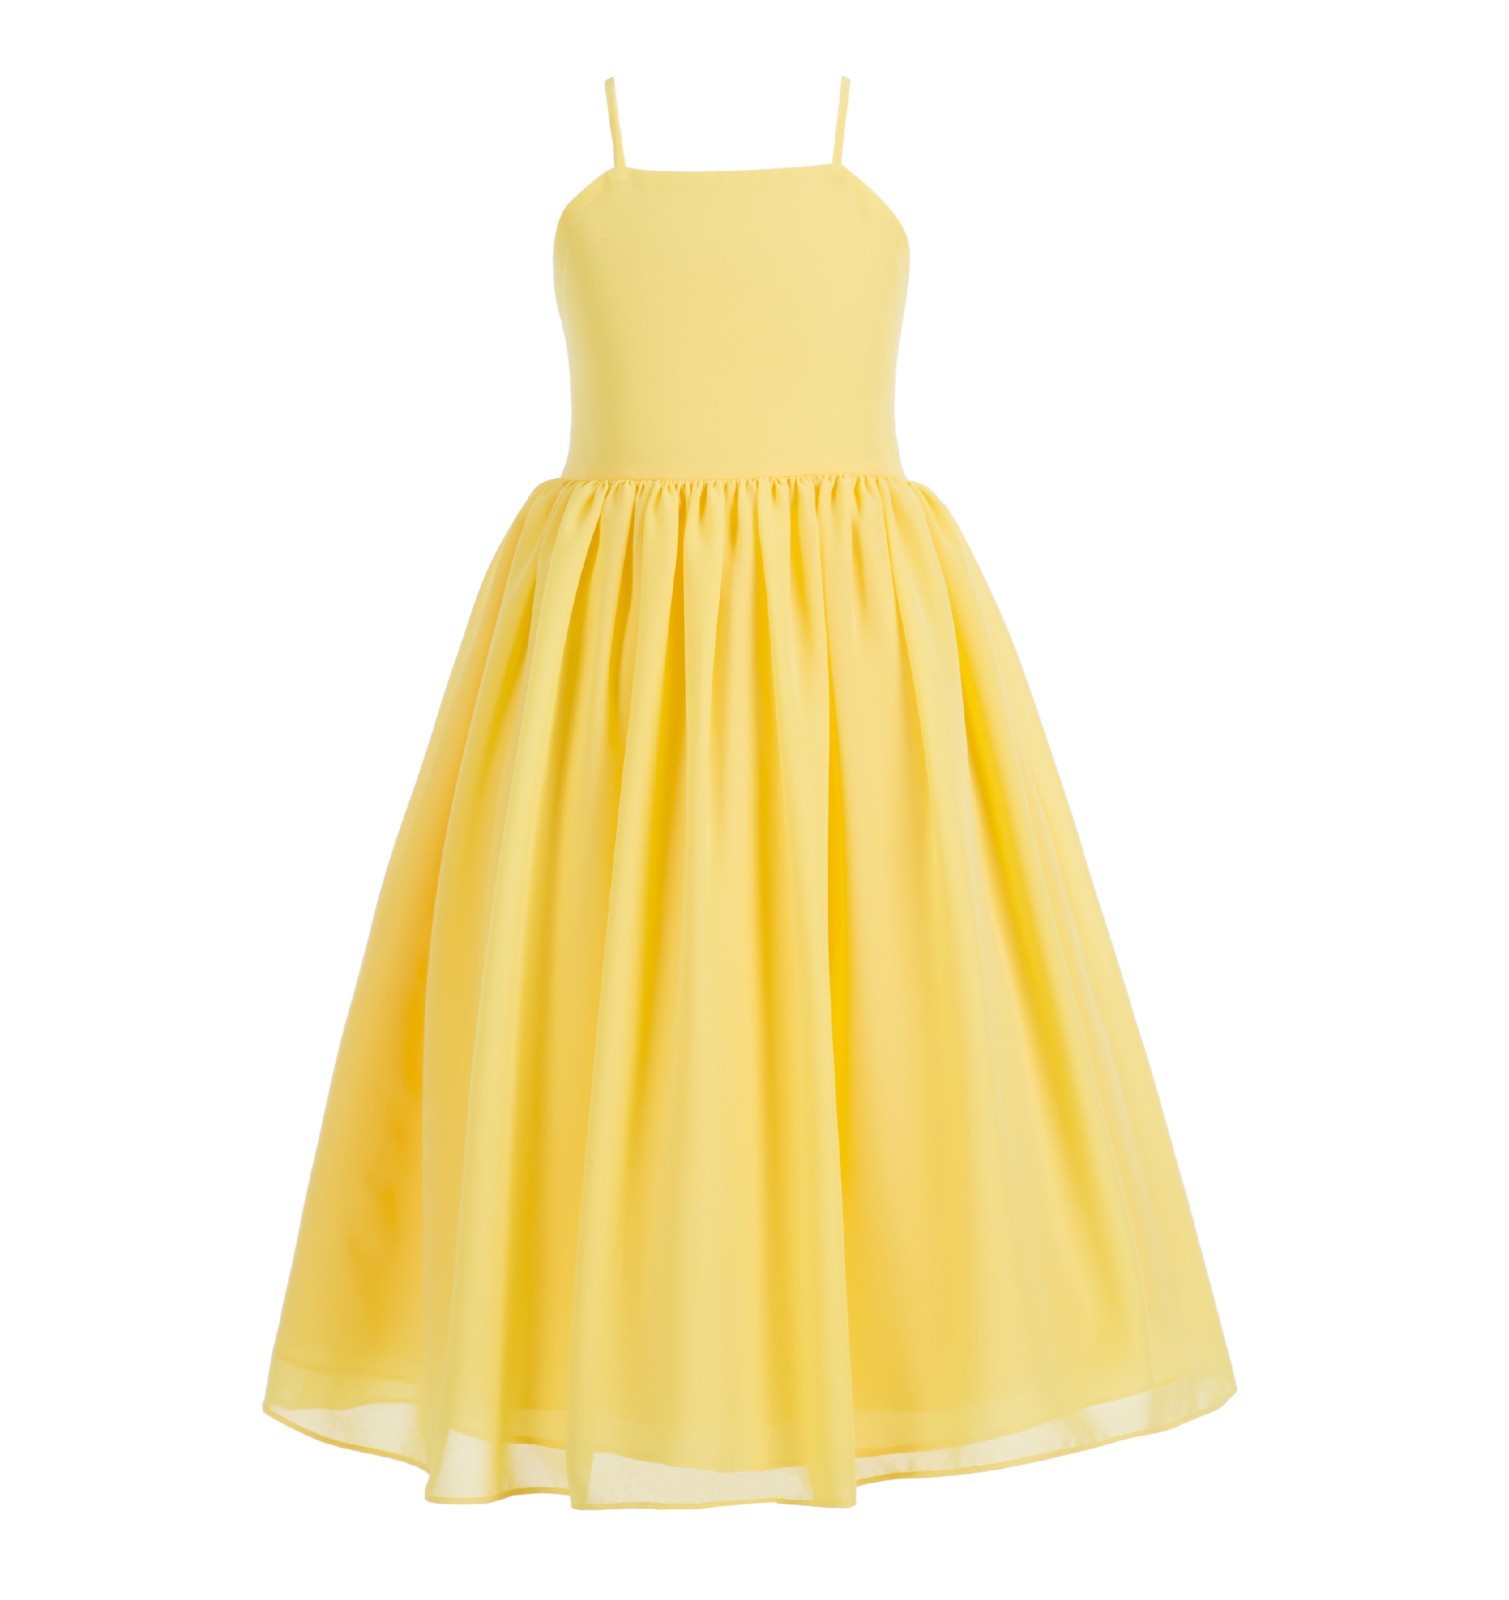 Sunbeam Criss Cross Chiffon Flower Girl Dress Summer Dress 191